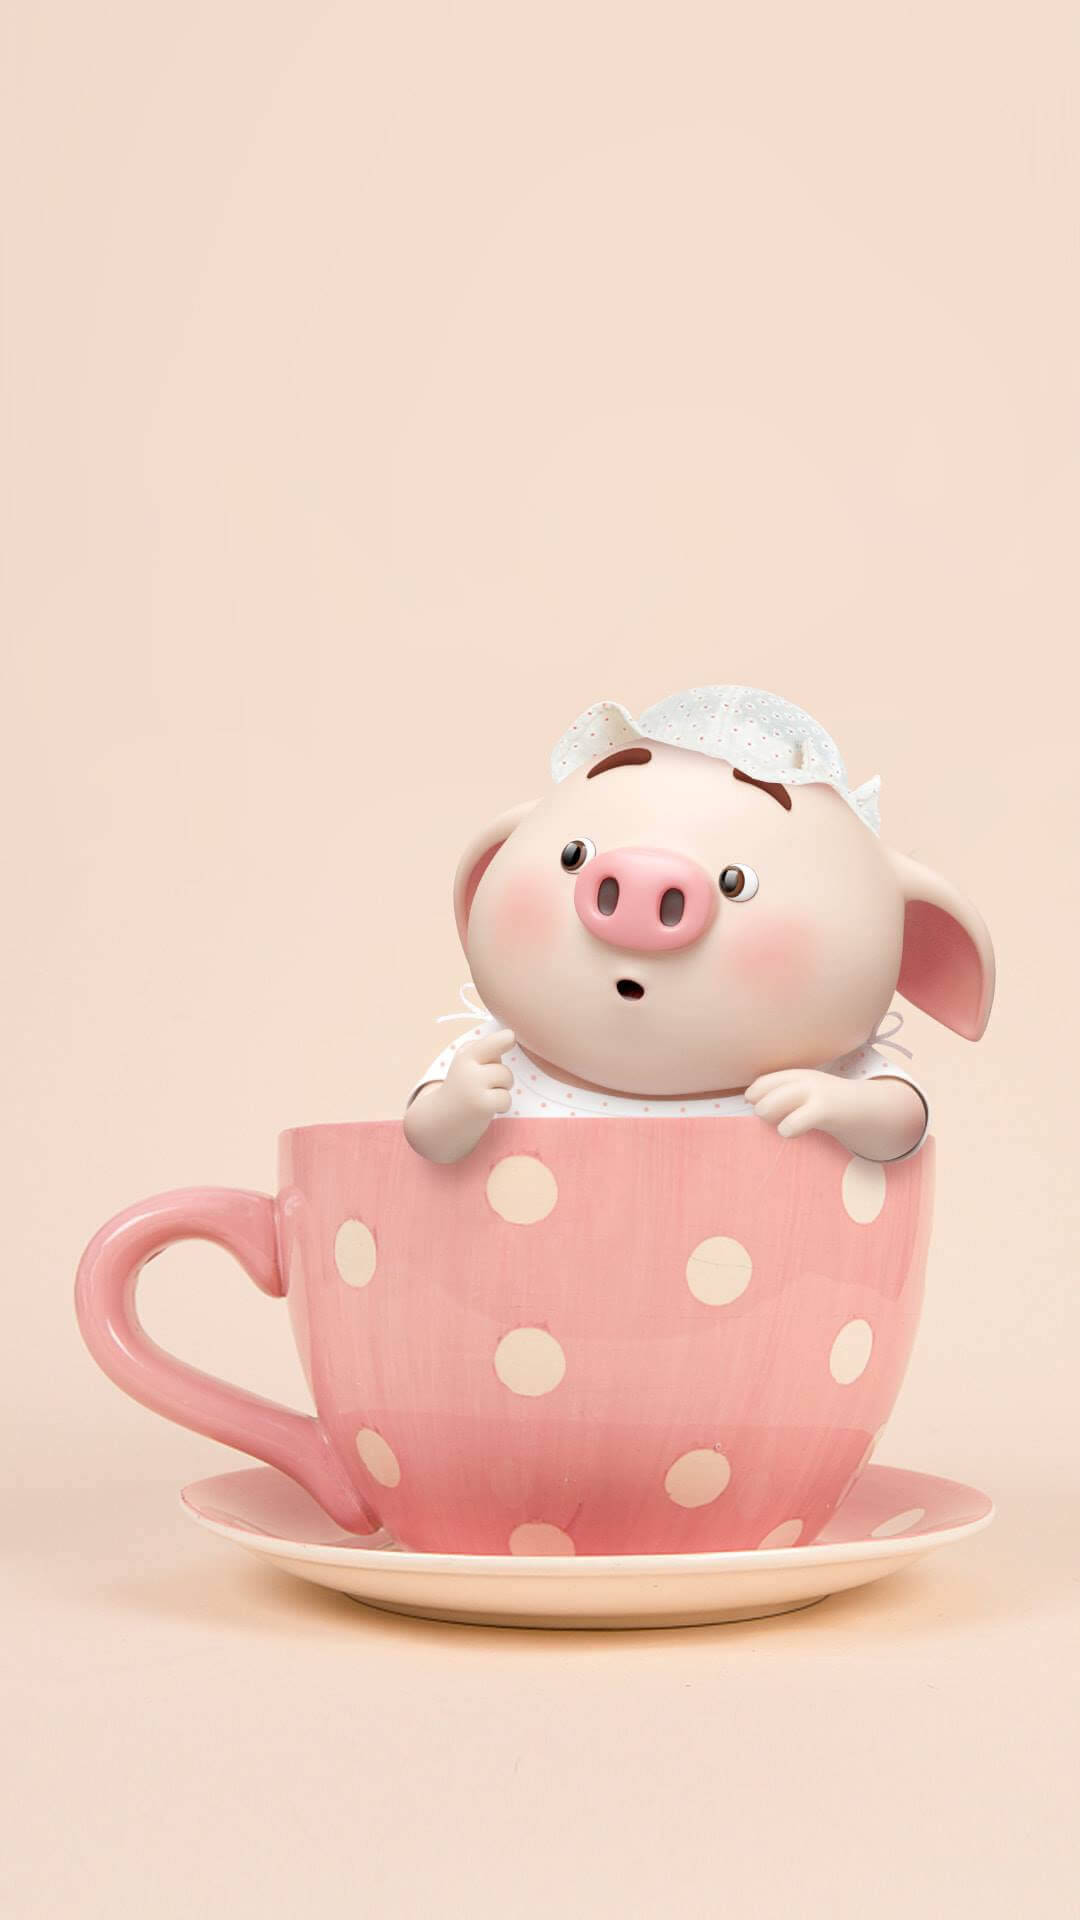 Mr Piggy In A Teacup